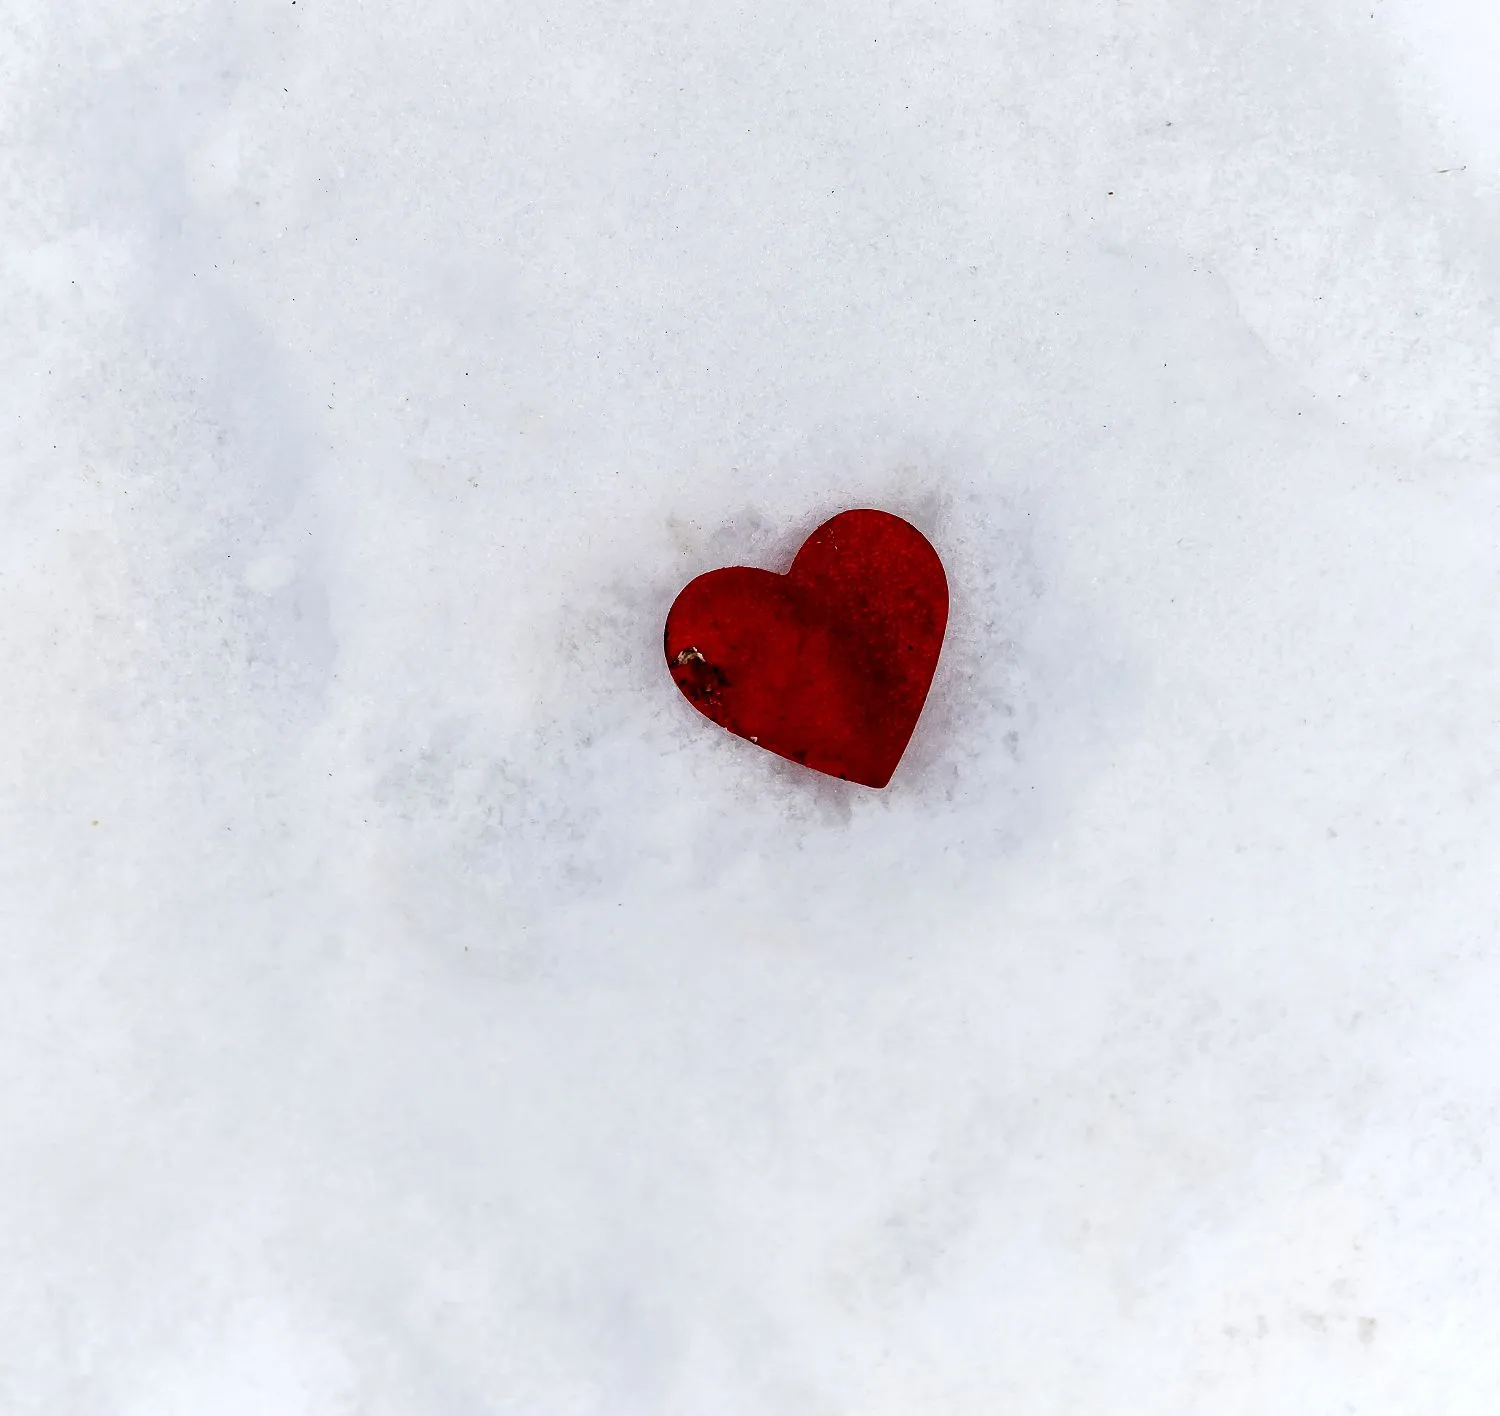 Сердце на снегу. Сердечко на снегу. Сердечко из снега. Выссанное сердце на снегу. Магомаев сердце на снегу